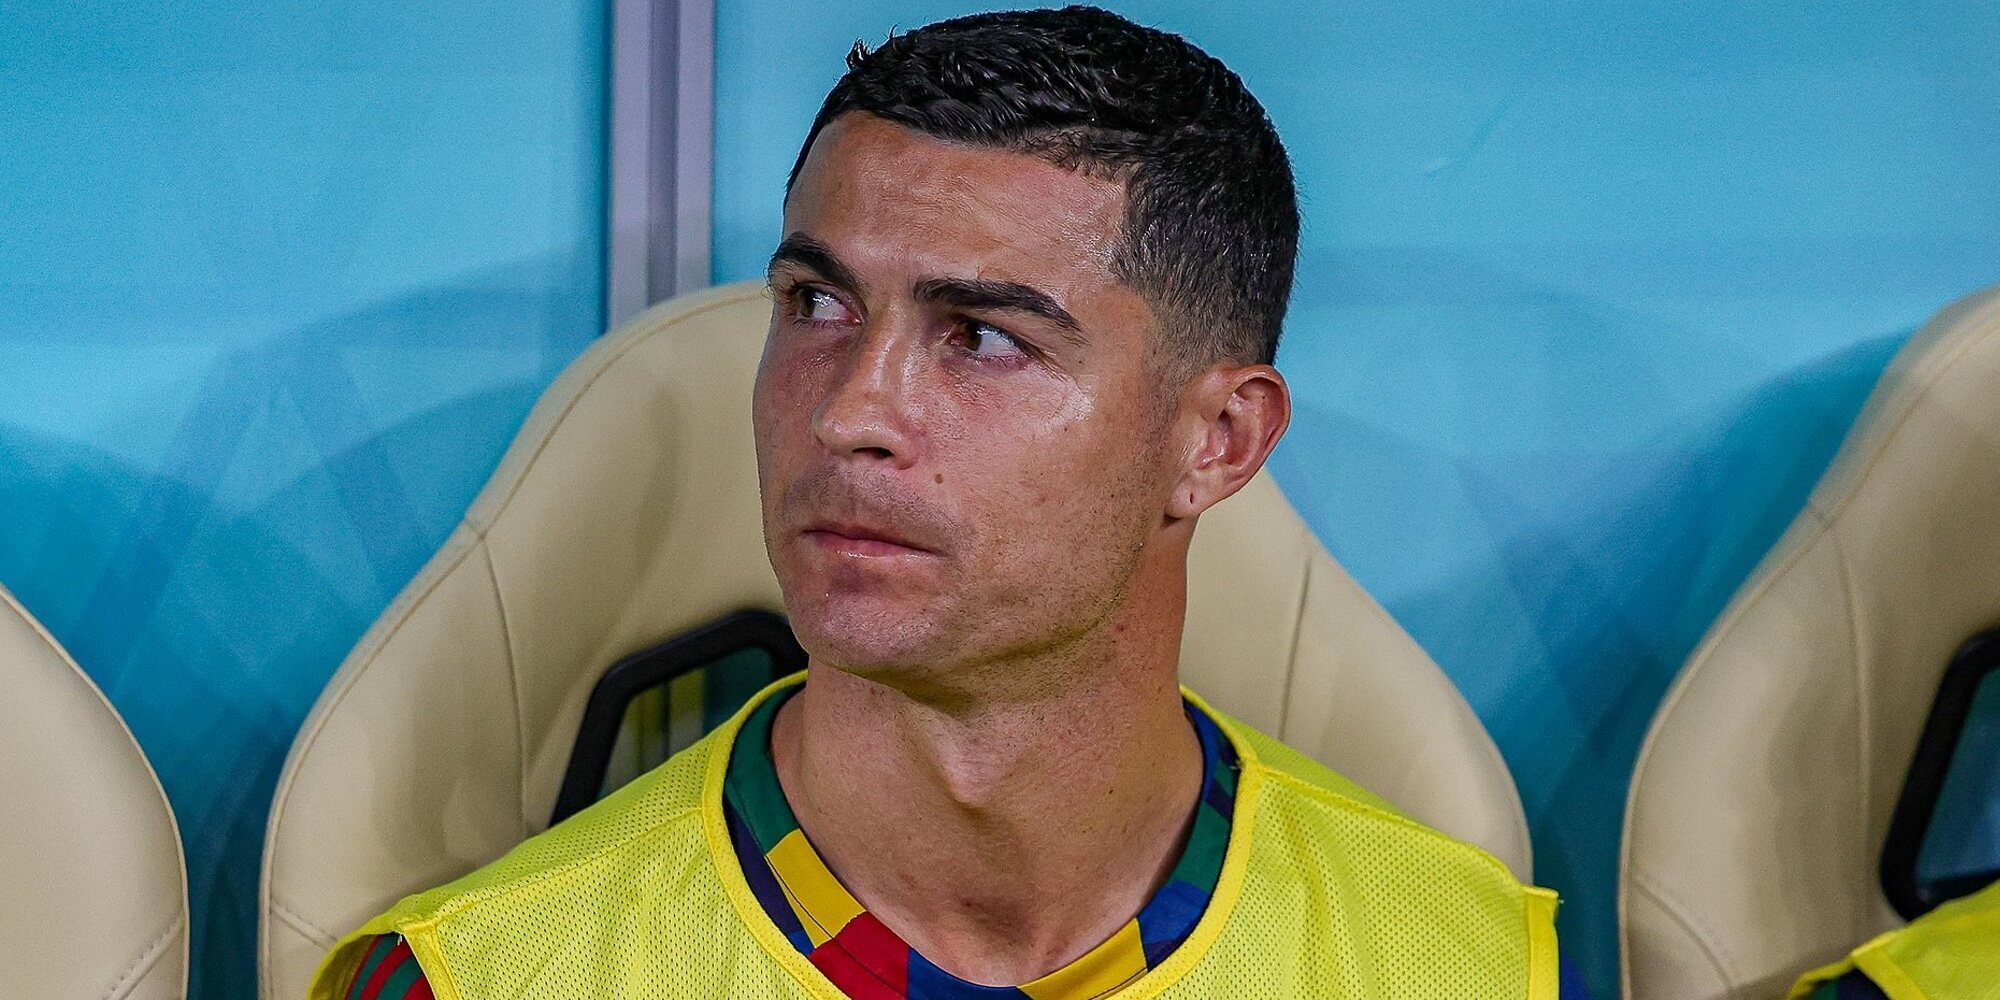 Cristiano Ronaldo reflexiona sobre su sueño no cumplido en el Mundial mientras la FIFA le da por retirado